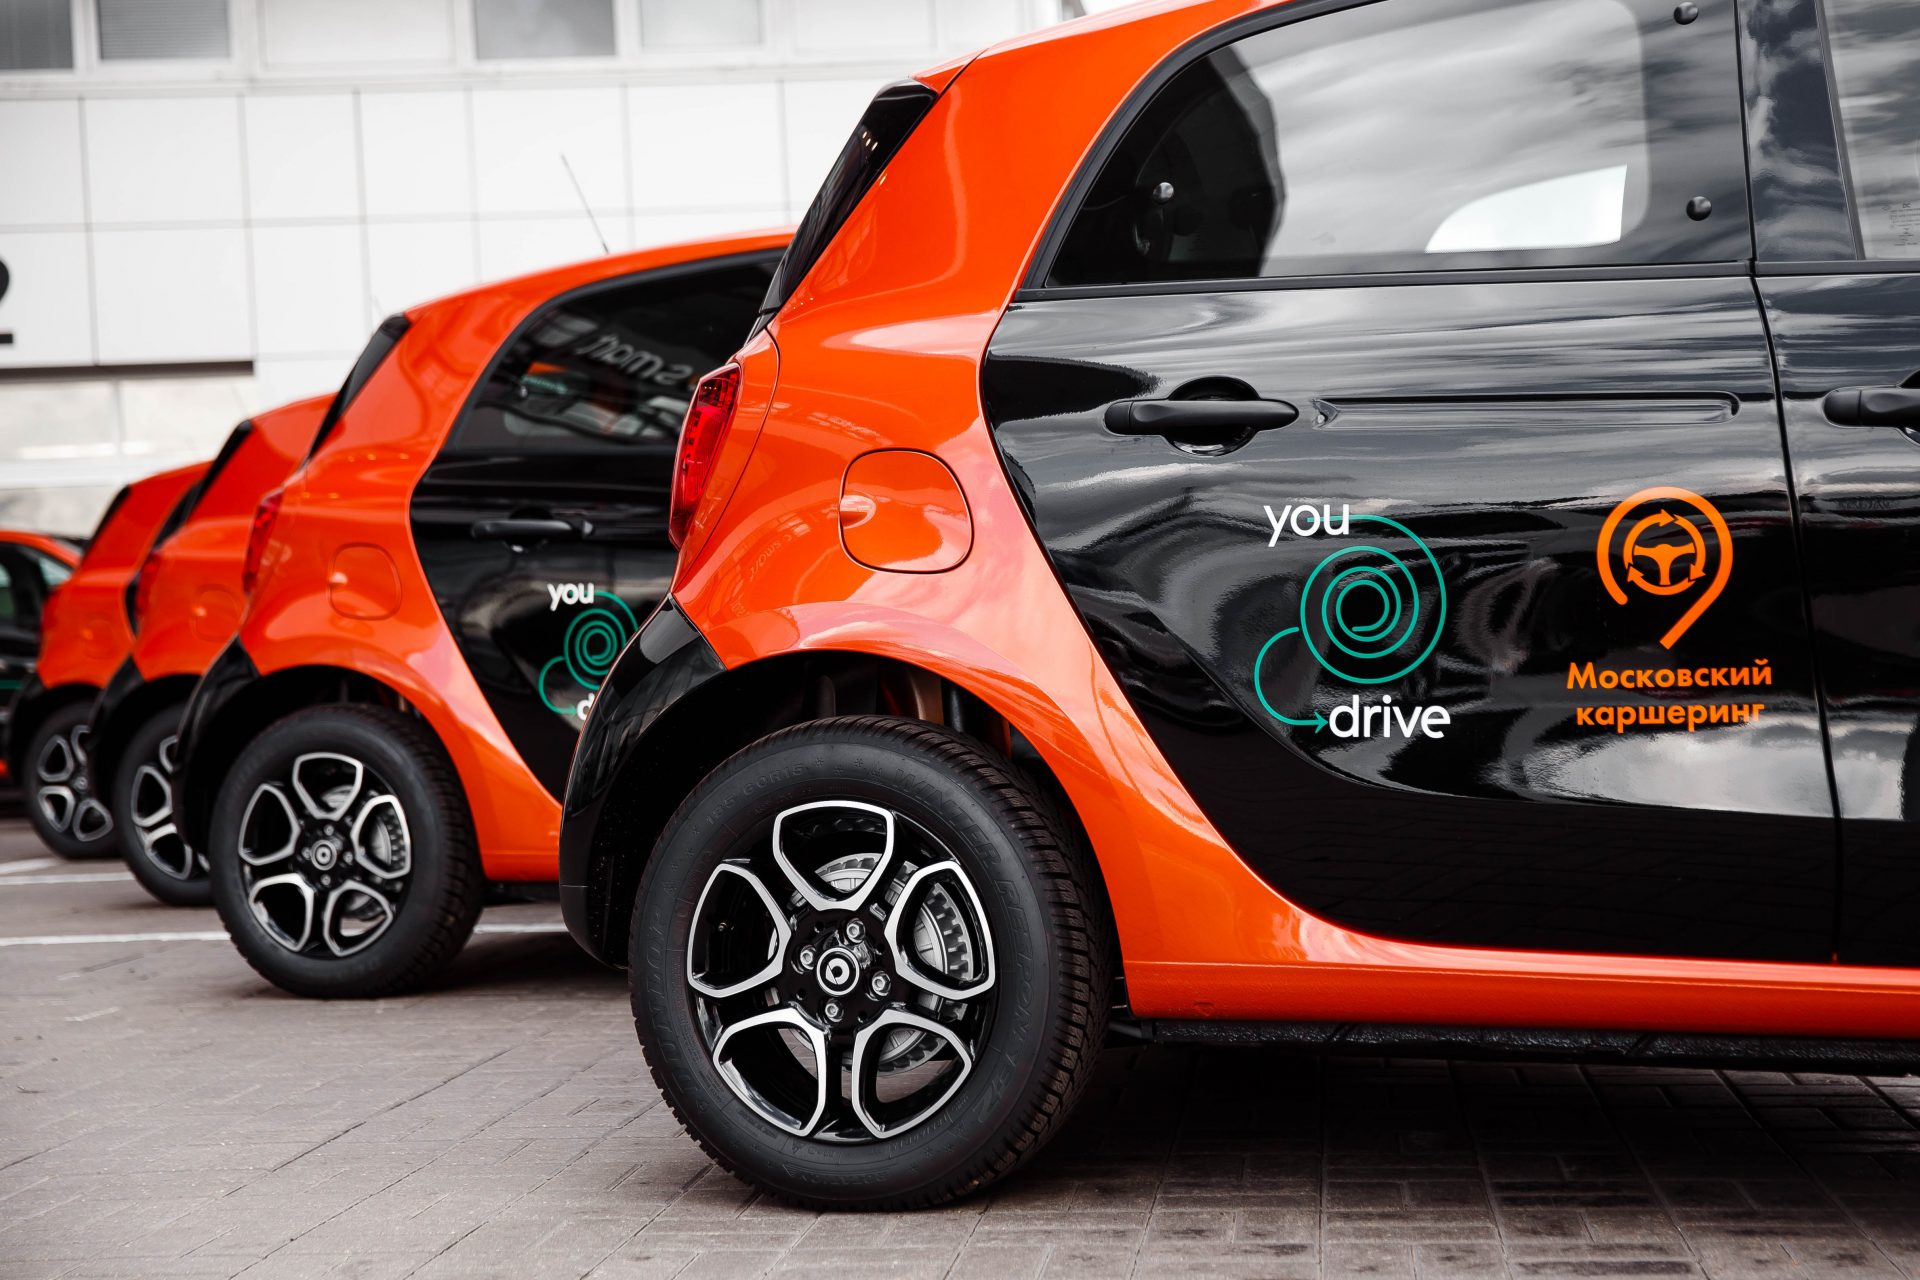 Панавто передал 300 автомобилей smart для московского каршеринга YouDrive